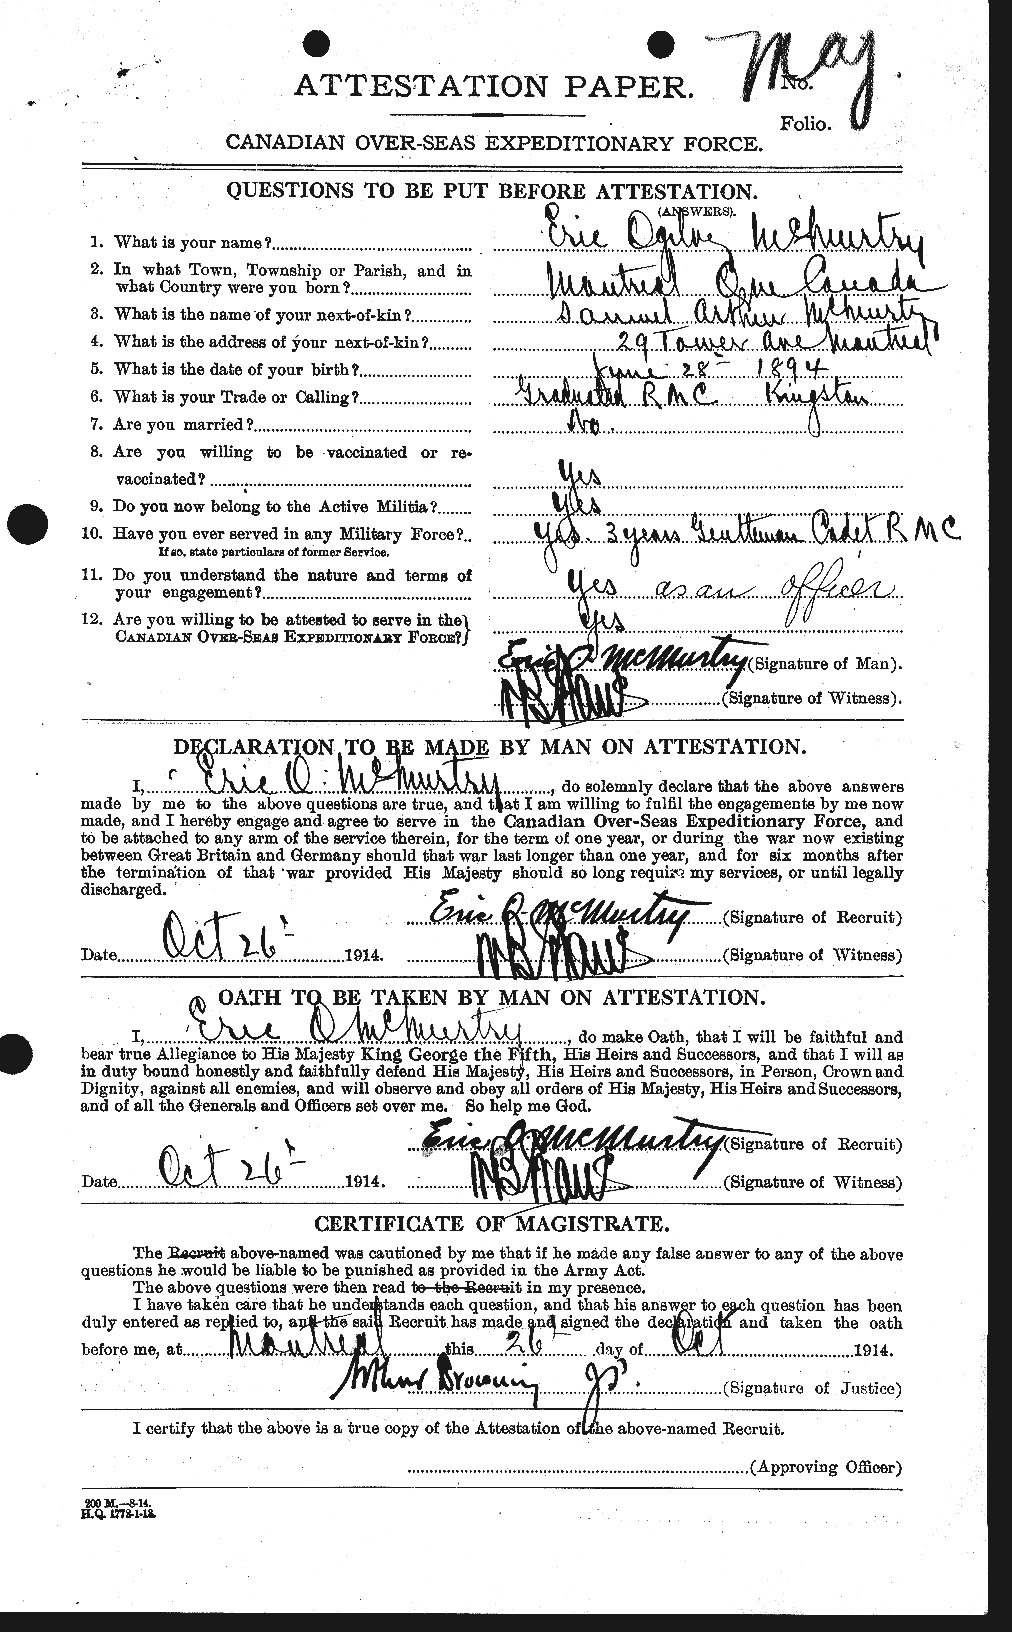 Dossiers du Personnel de la Première Guerre mondiale - CEC 539492a